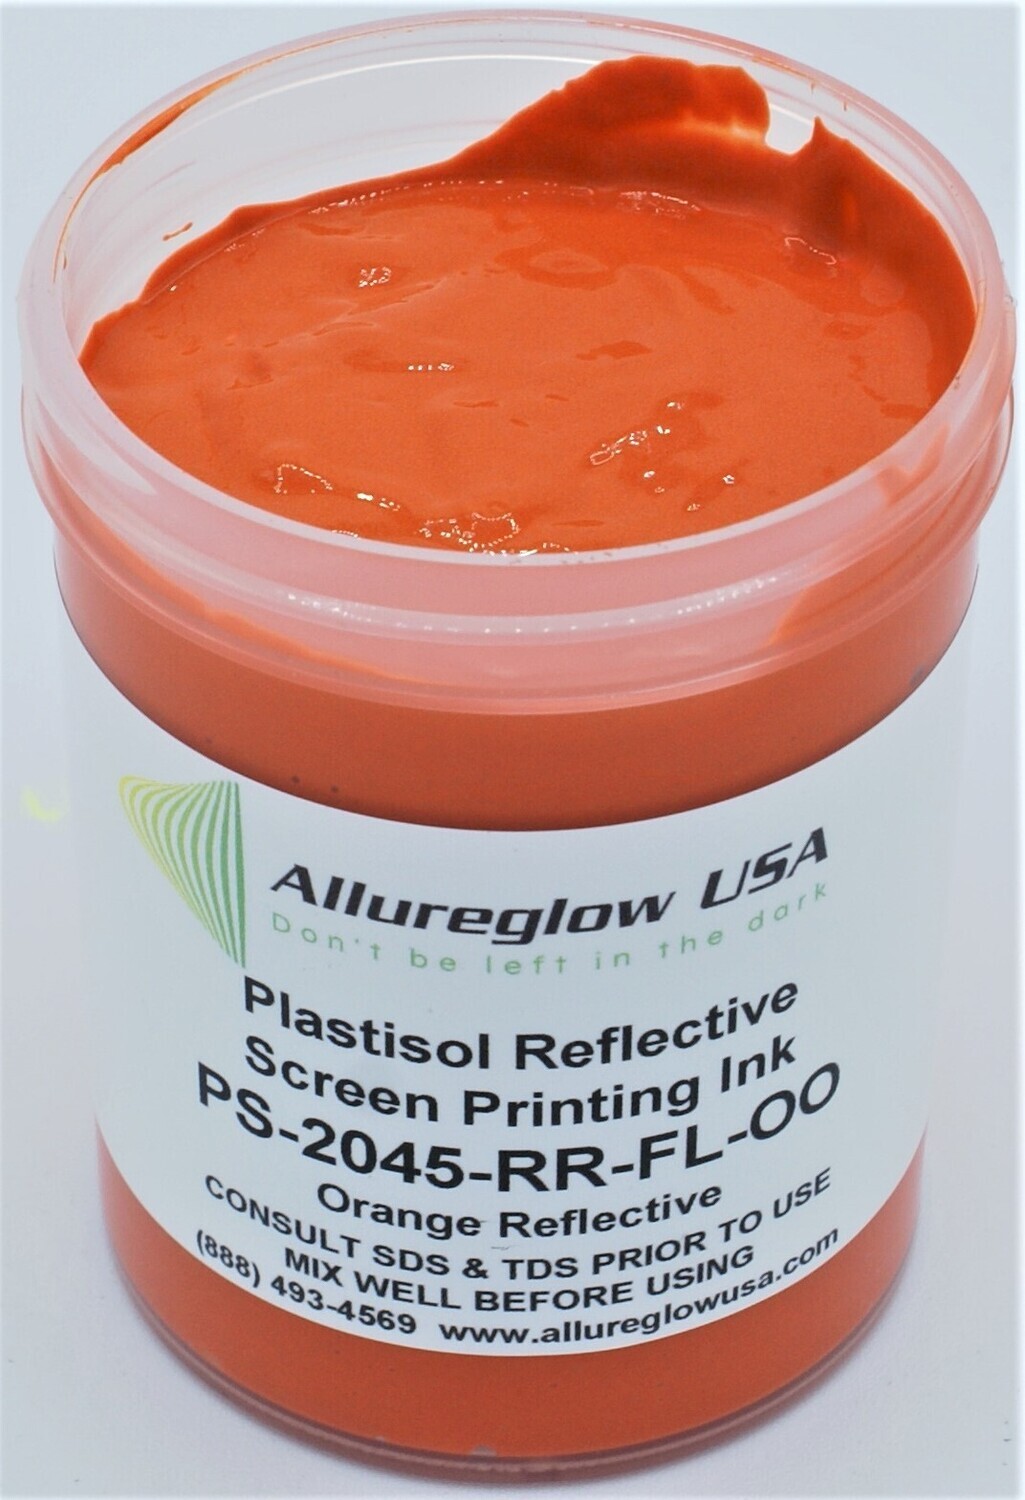 PS-2045-RR-FL-OO-QT PLASTISOL FLUORESCENT ORANGE REFLECTIVE INK QUART